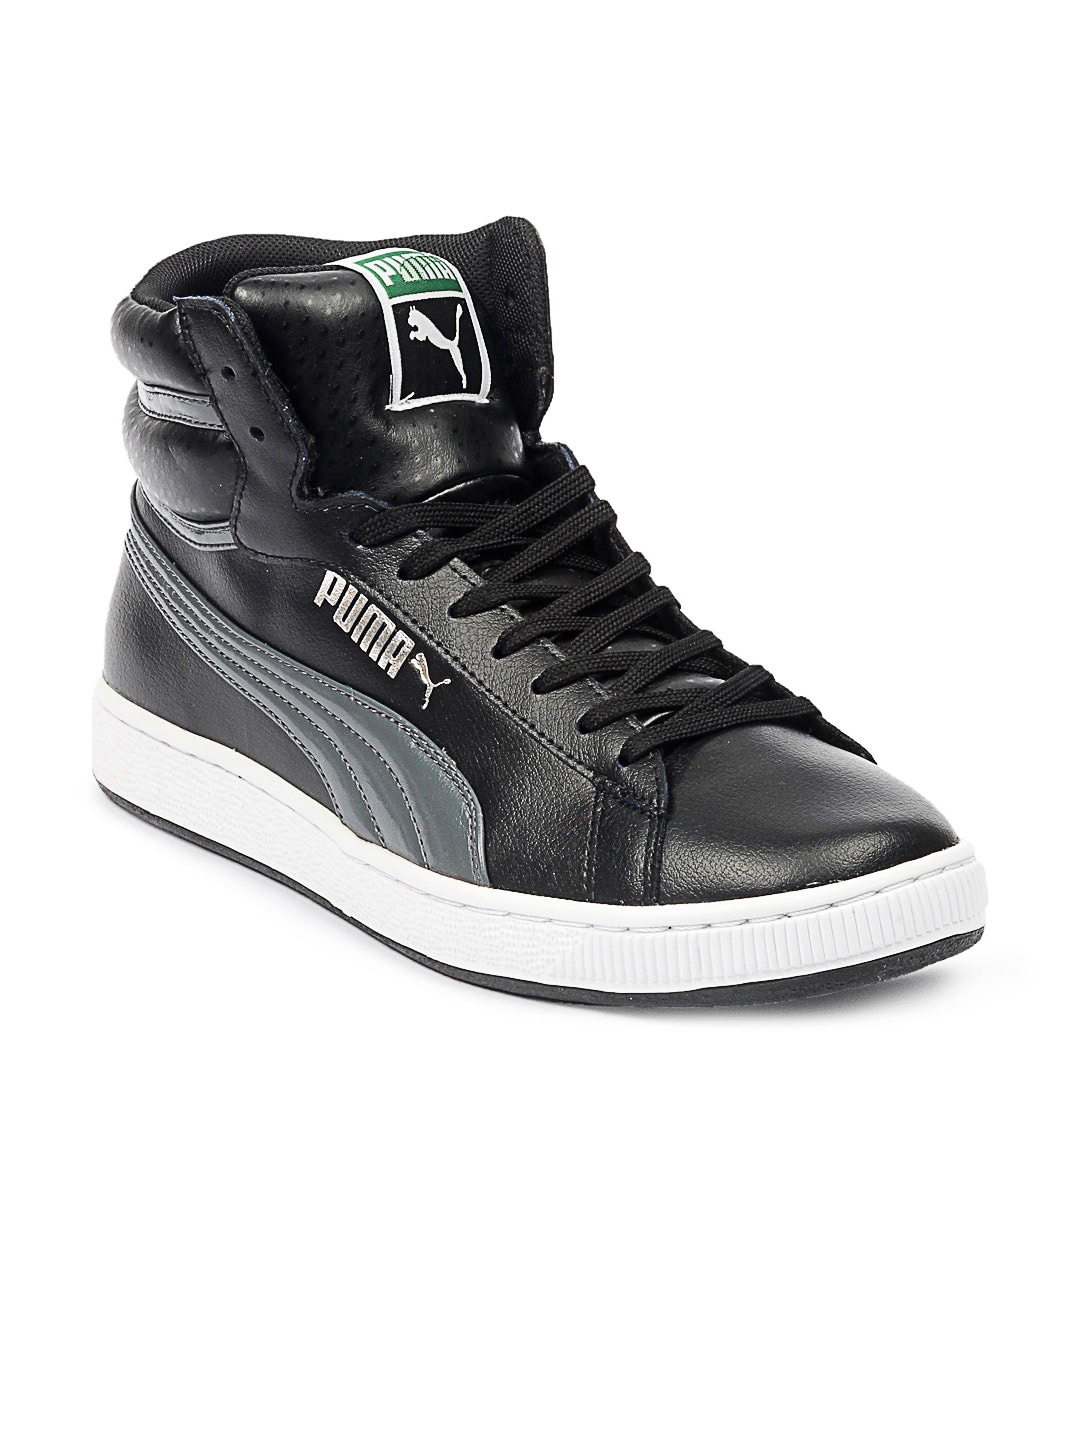 Puma Men Black RS Hi Leather Shoes